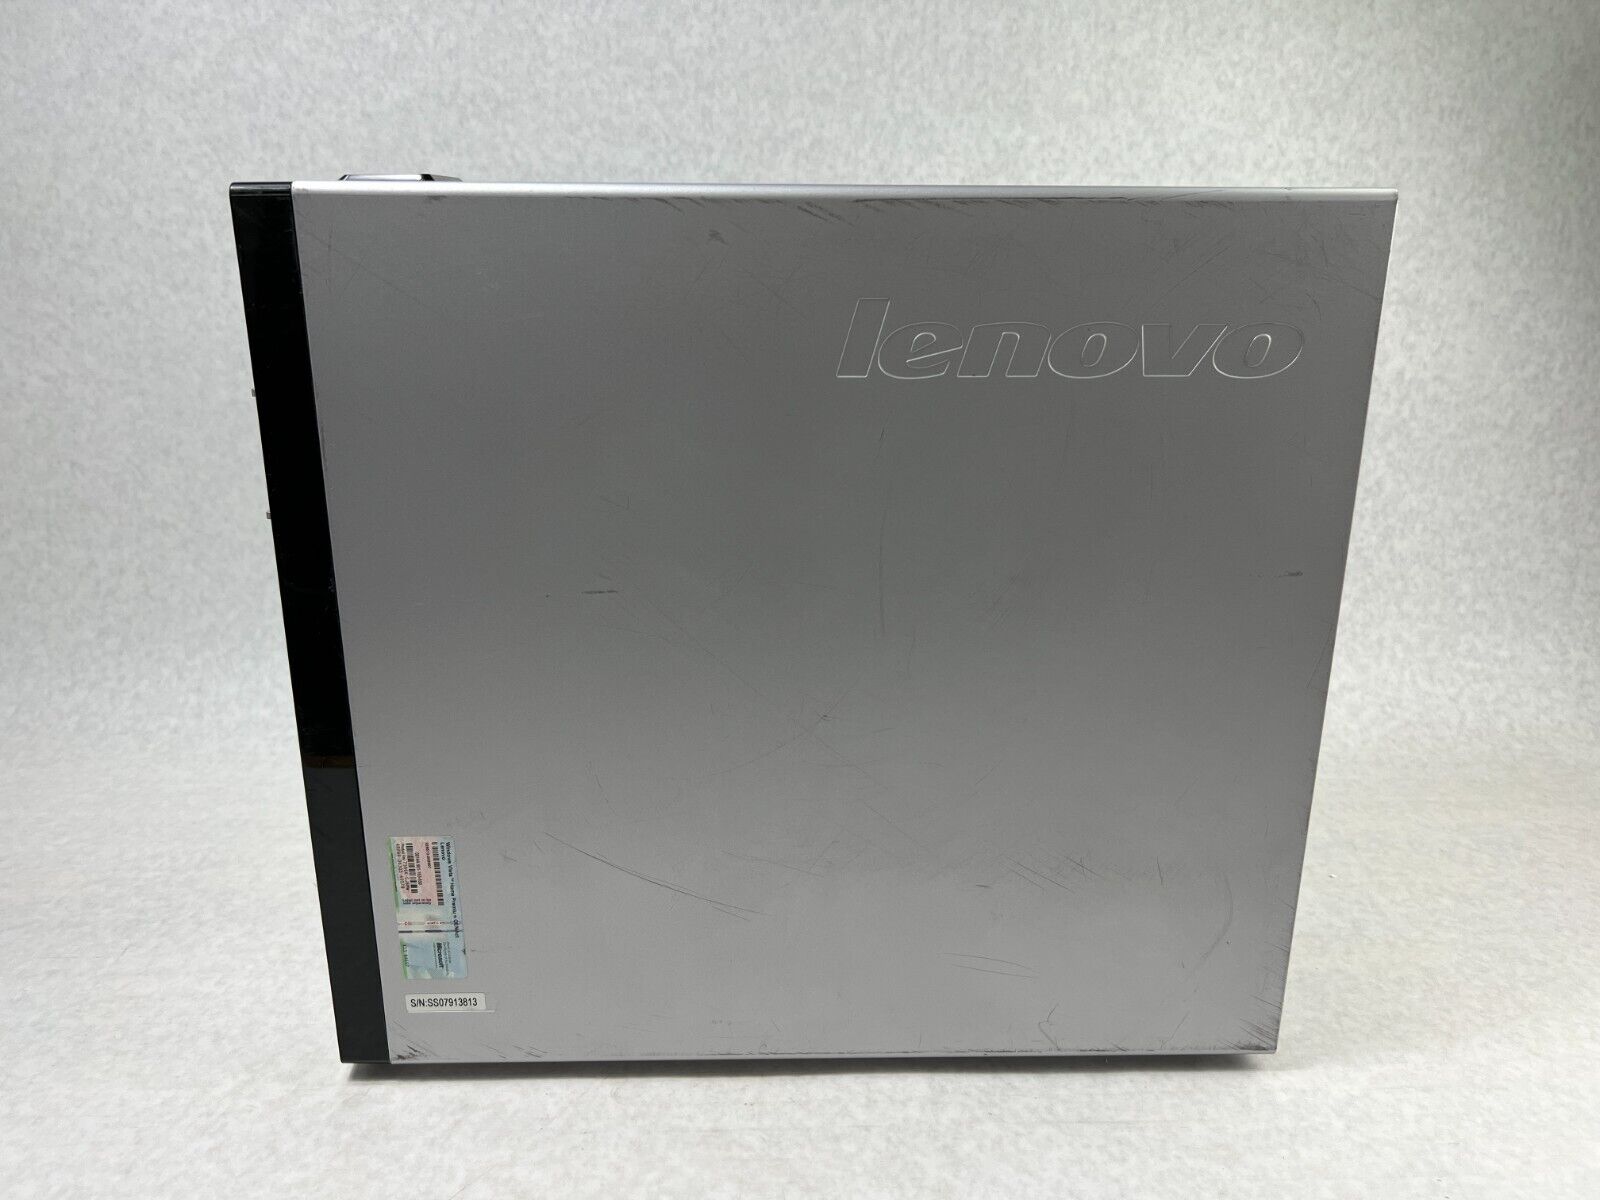 Lenovo IdeaCentre K210 MT Intel Core 2 Quad-6600 2.4GHz 3GB RAM No HDD No OS